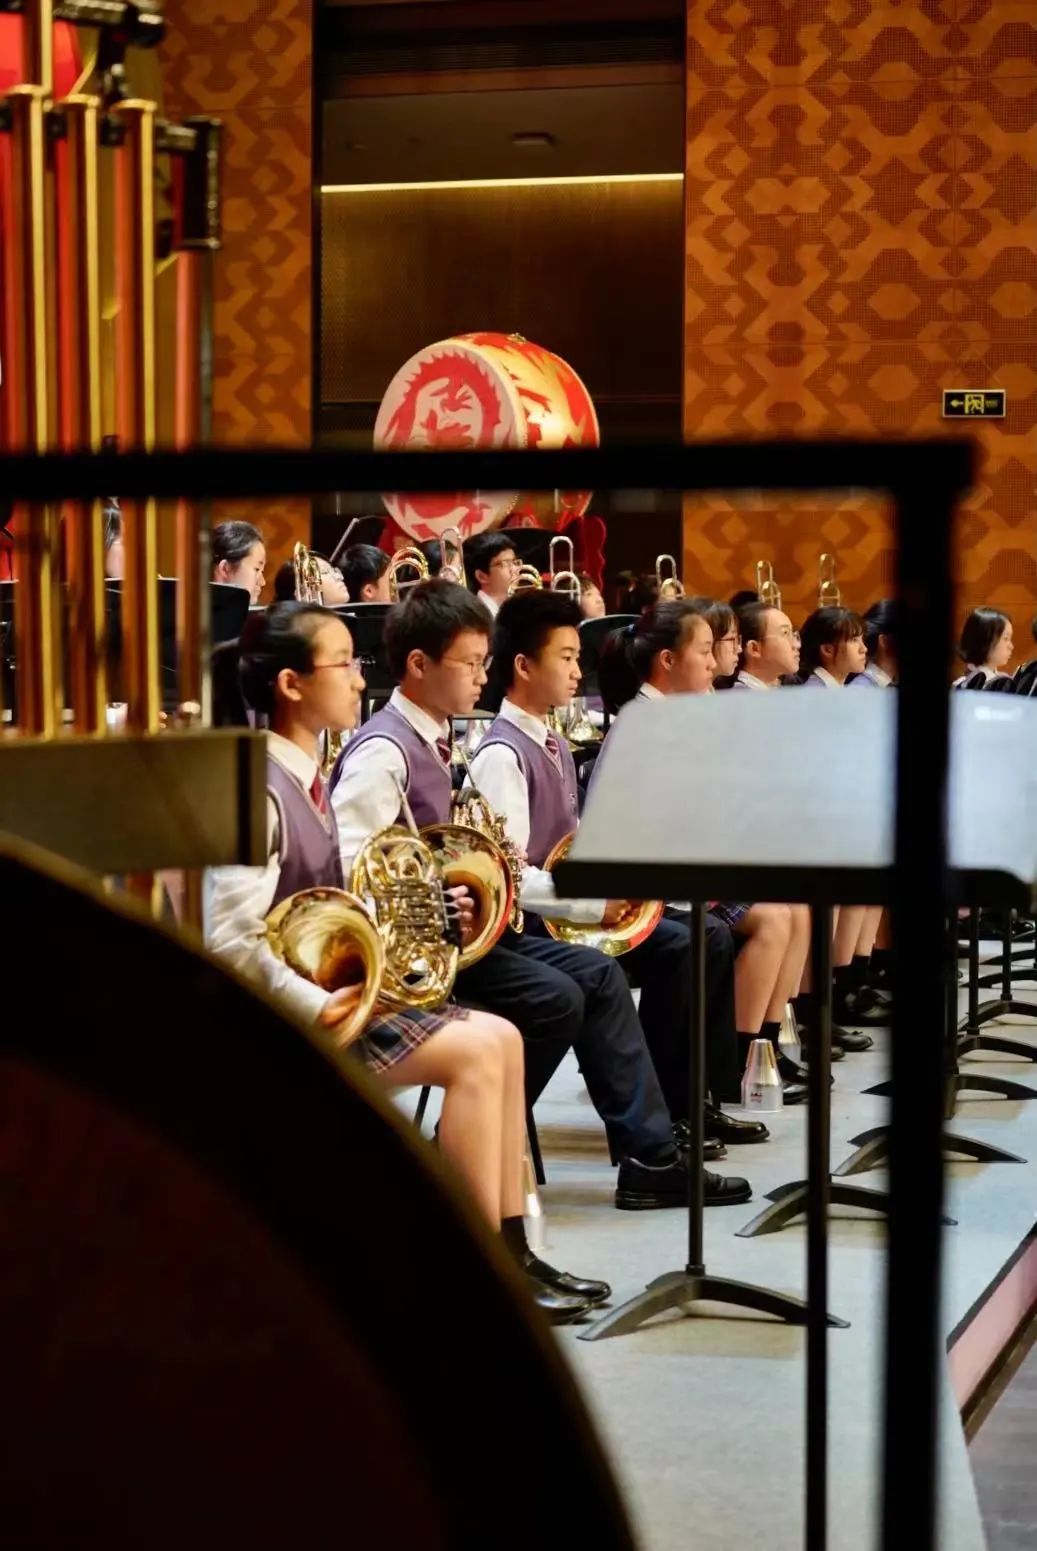 上海民办协和双语尚音学校协奏和谐乐章 喜获“示范乐团”